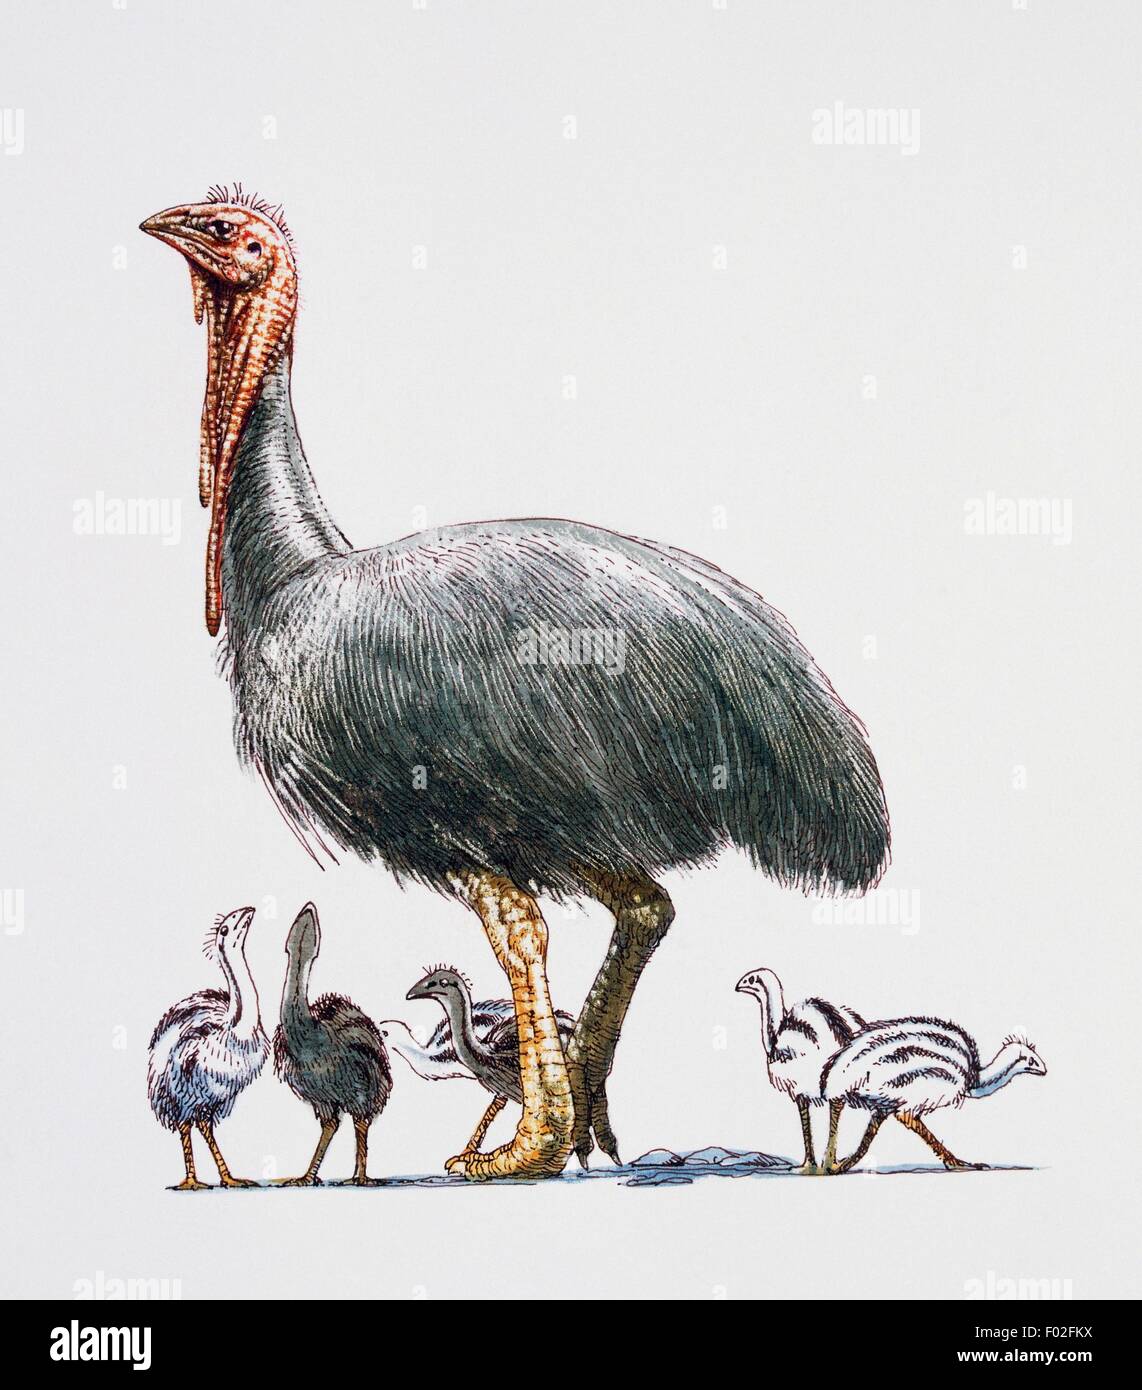 Dromornis sp, Dromornithidae, la fin de l'Miocene-Early Pliocène. Illustration de James Robins. Banque D'Images